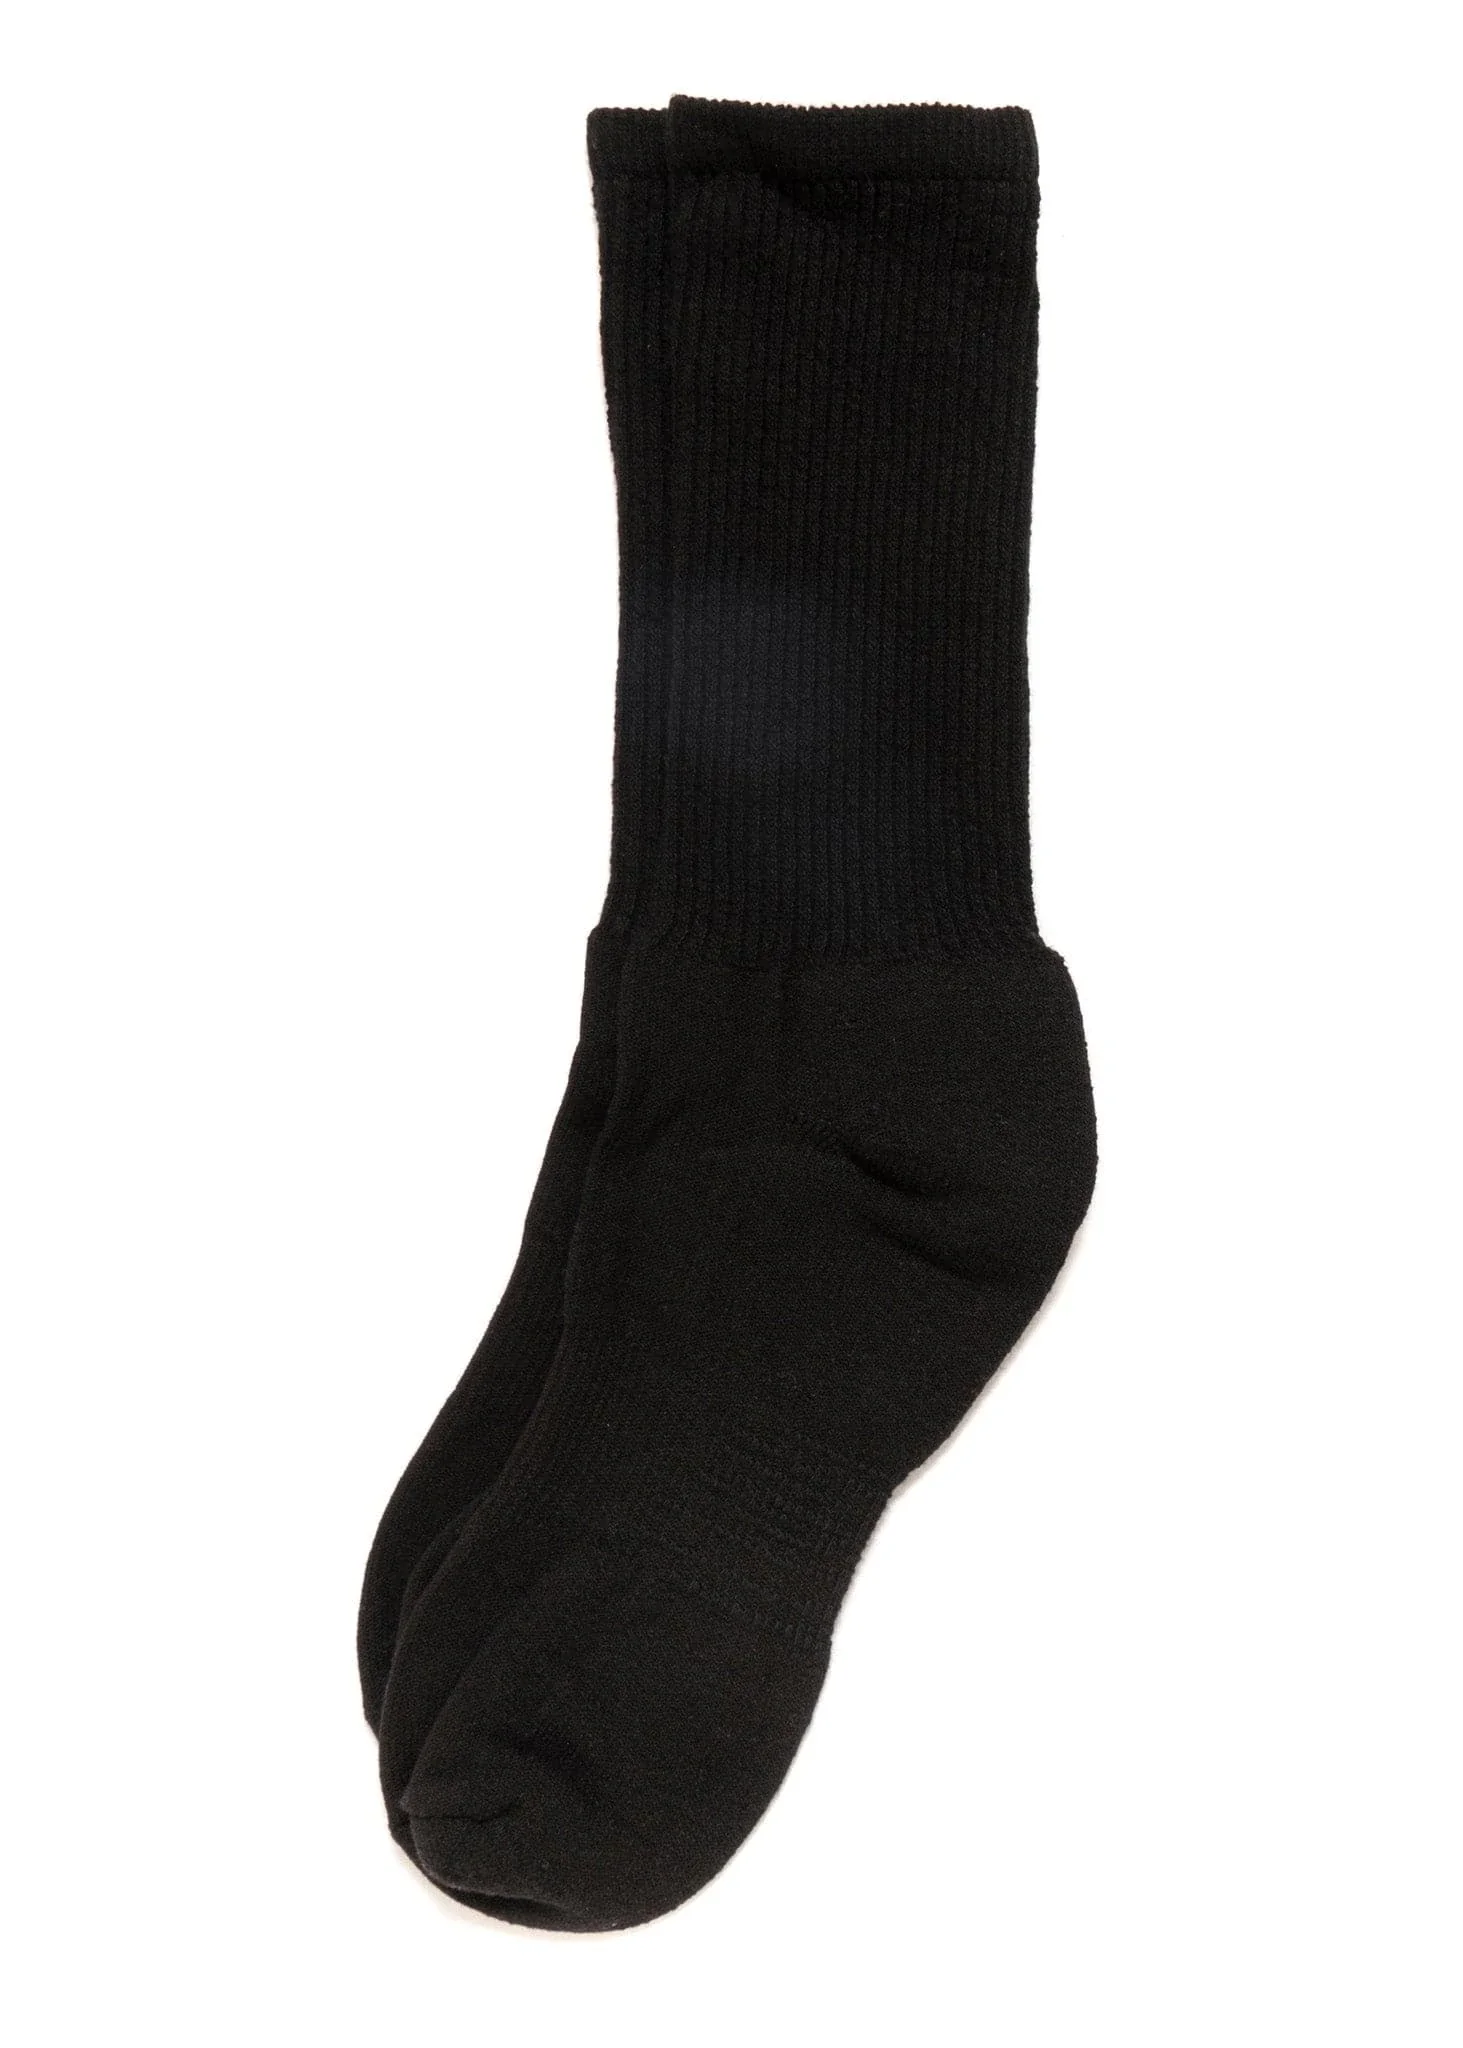 Image of Mil-Spec Sport Socks